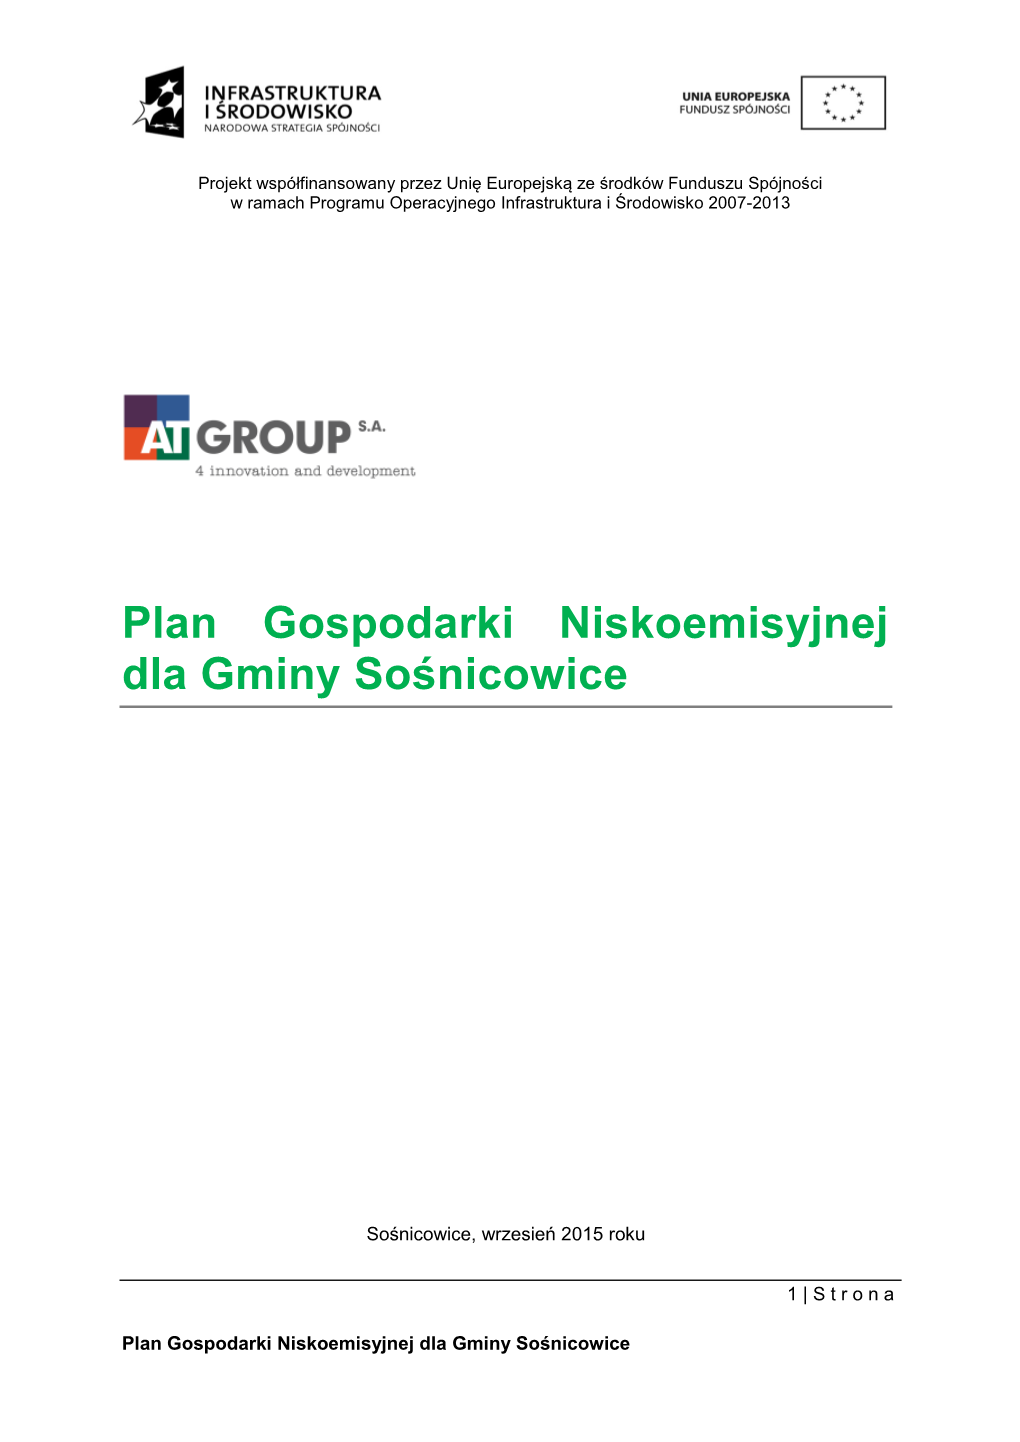 Plan Gospodarki Niskoemisyjnej Dla Gminy Sośnicowice